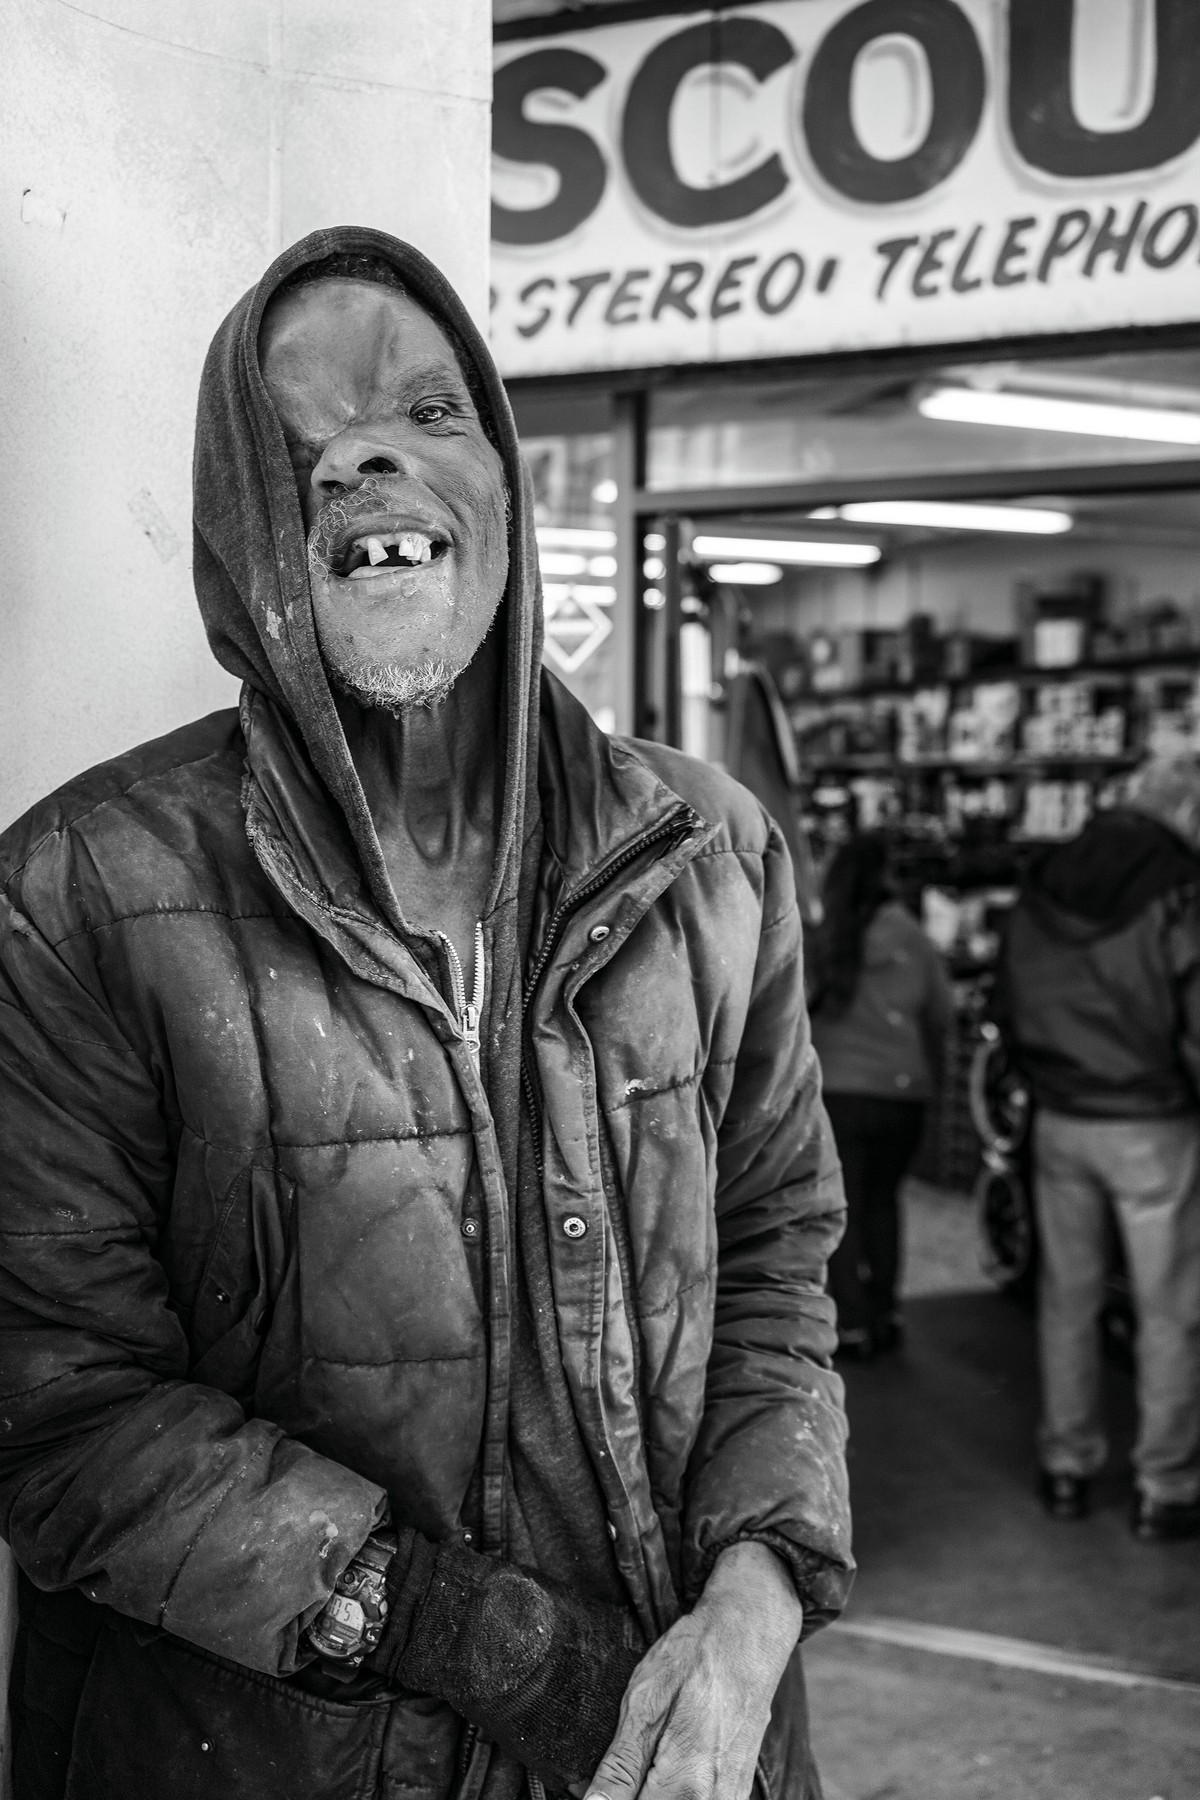 Фотограф десять лет документировал жизнь бездомных в Лос-Анджелесе